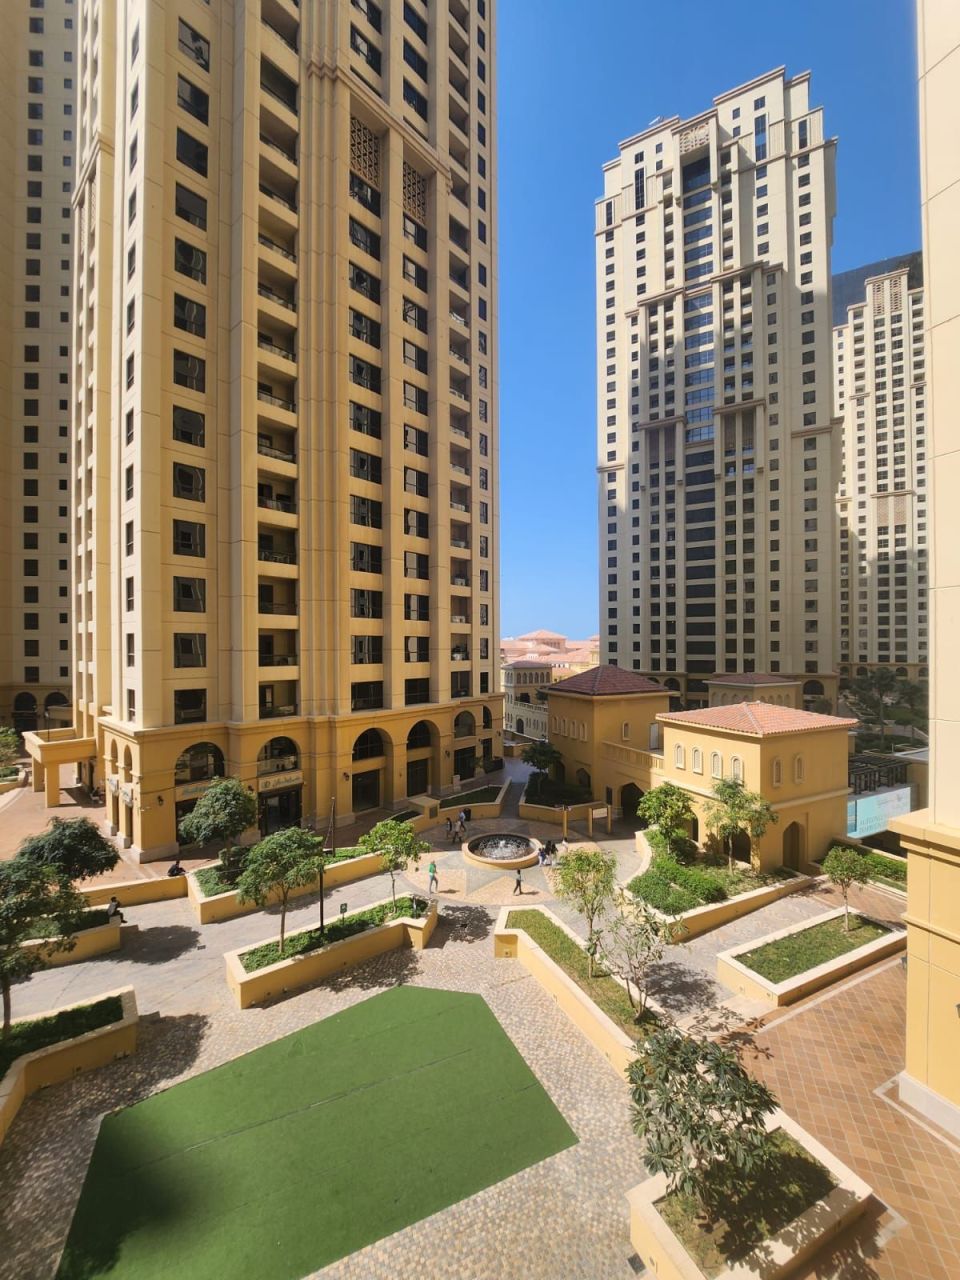 Apartment in Dubai, UAE, 250 sq.m - picture 1